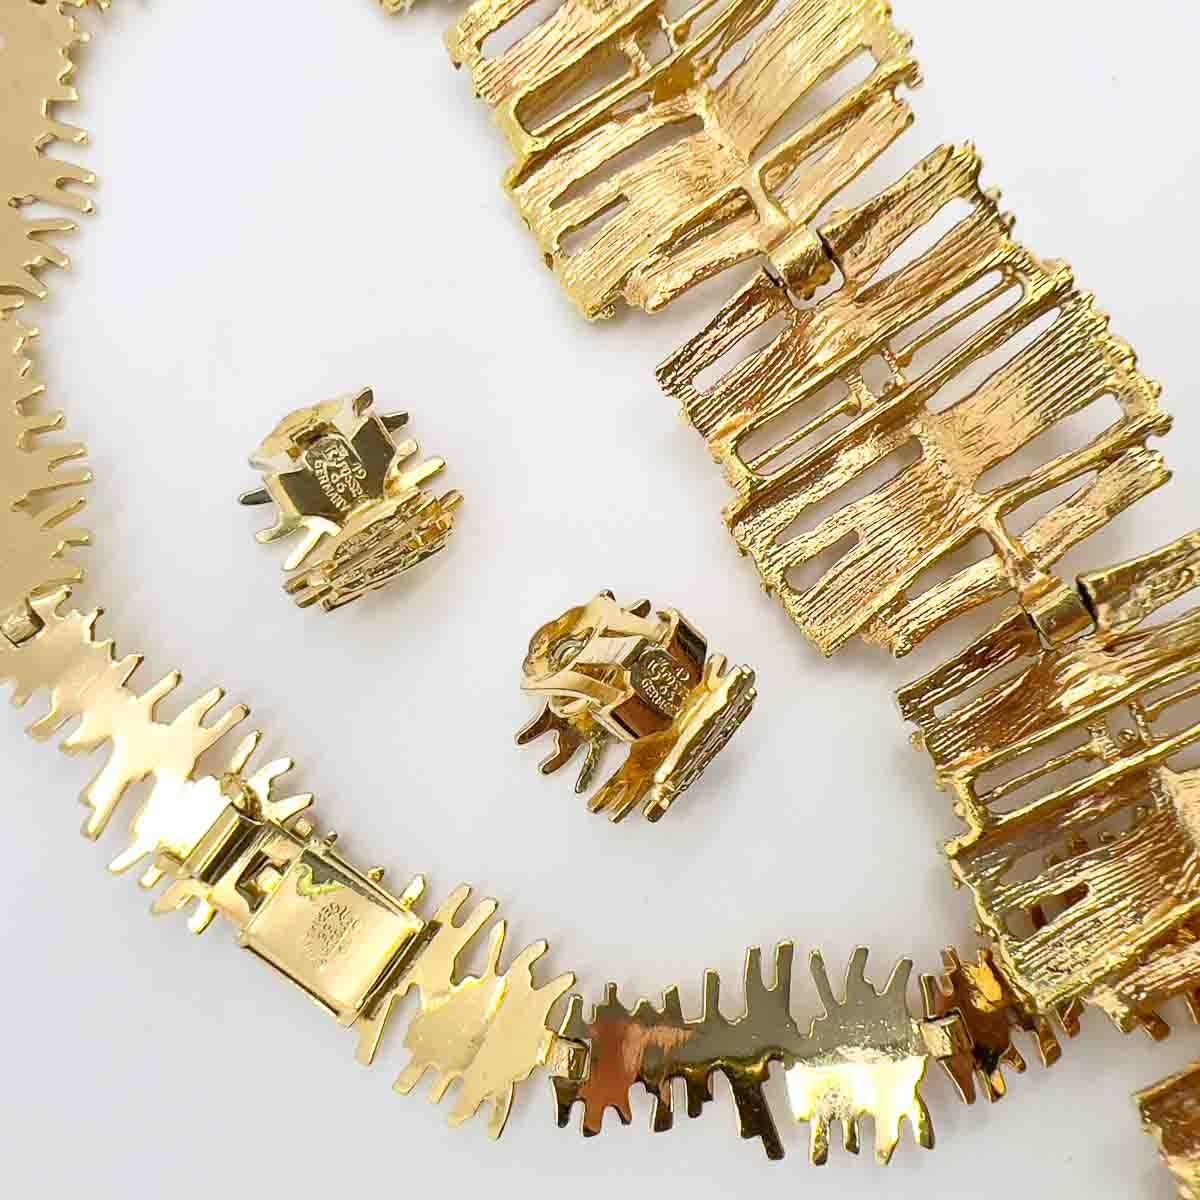 Ein Vintage Grossé Modernist Halskette und Ohrring-Set mit Harlekin-Armband. Einige von Grossés besten Stücken sind die modernistisch inspirierten Entwürfe. Dieses außergewöhnliche Halsband und die Ohrringe, begleitet von einem unsignierten